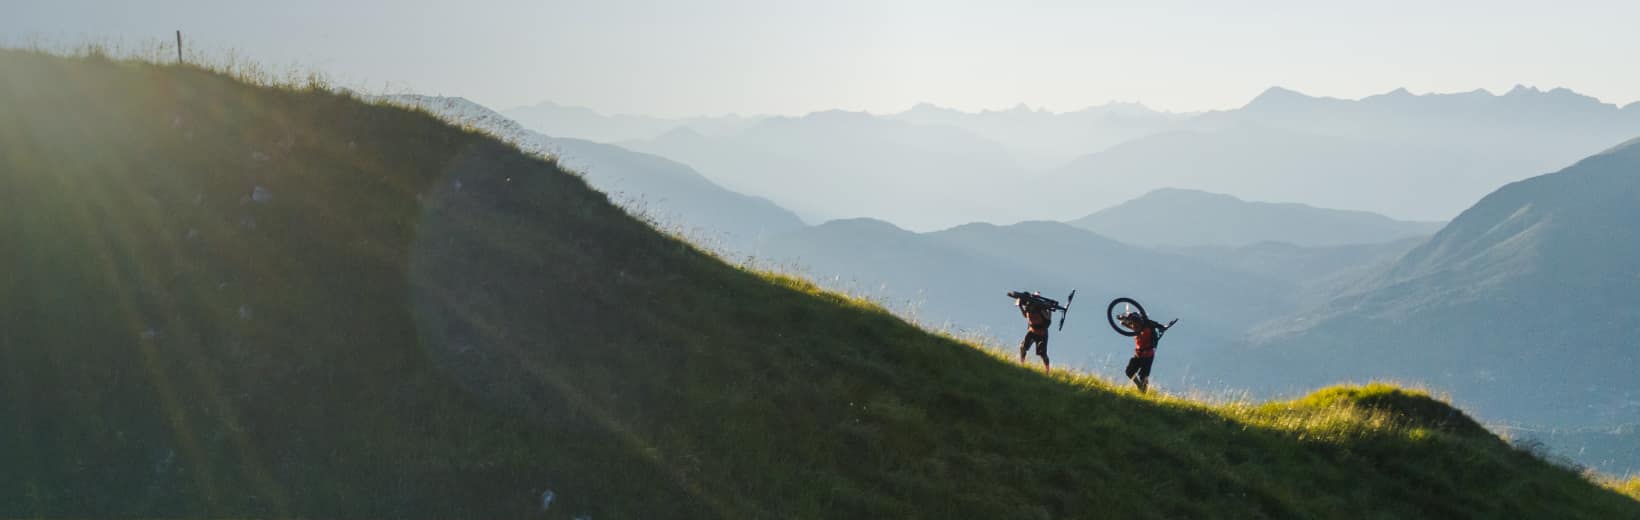 Duas pessoas a subir uma montanha